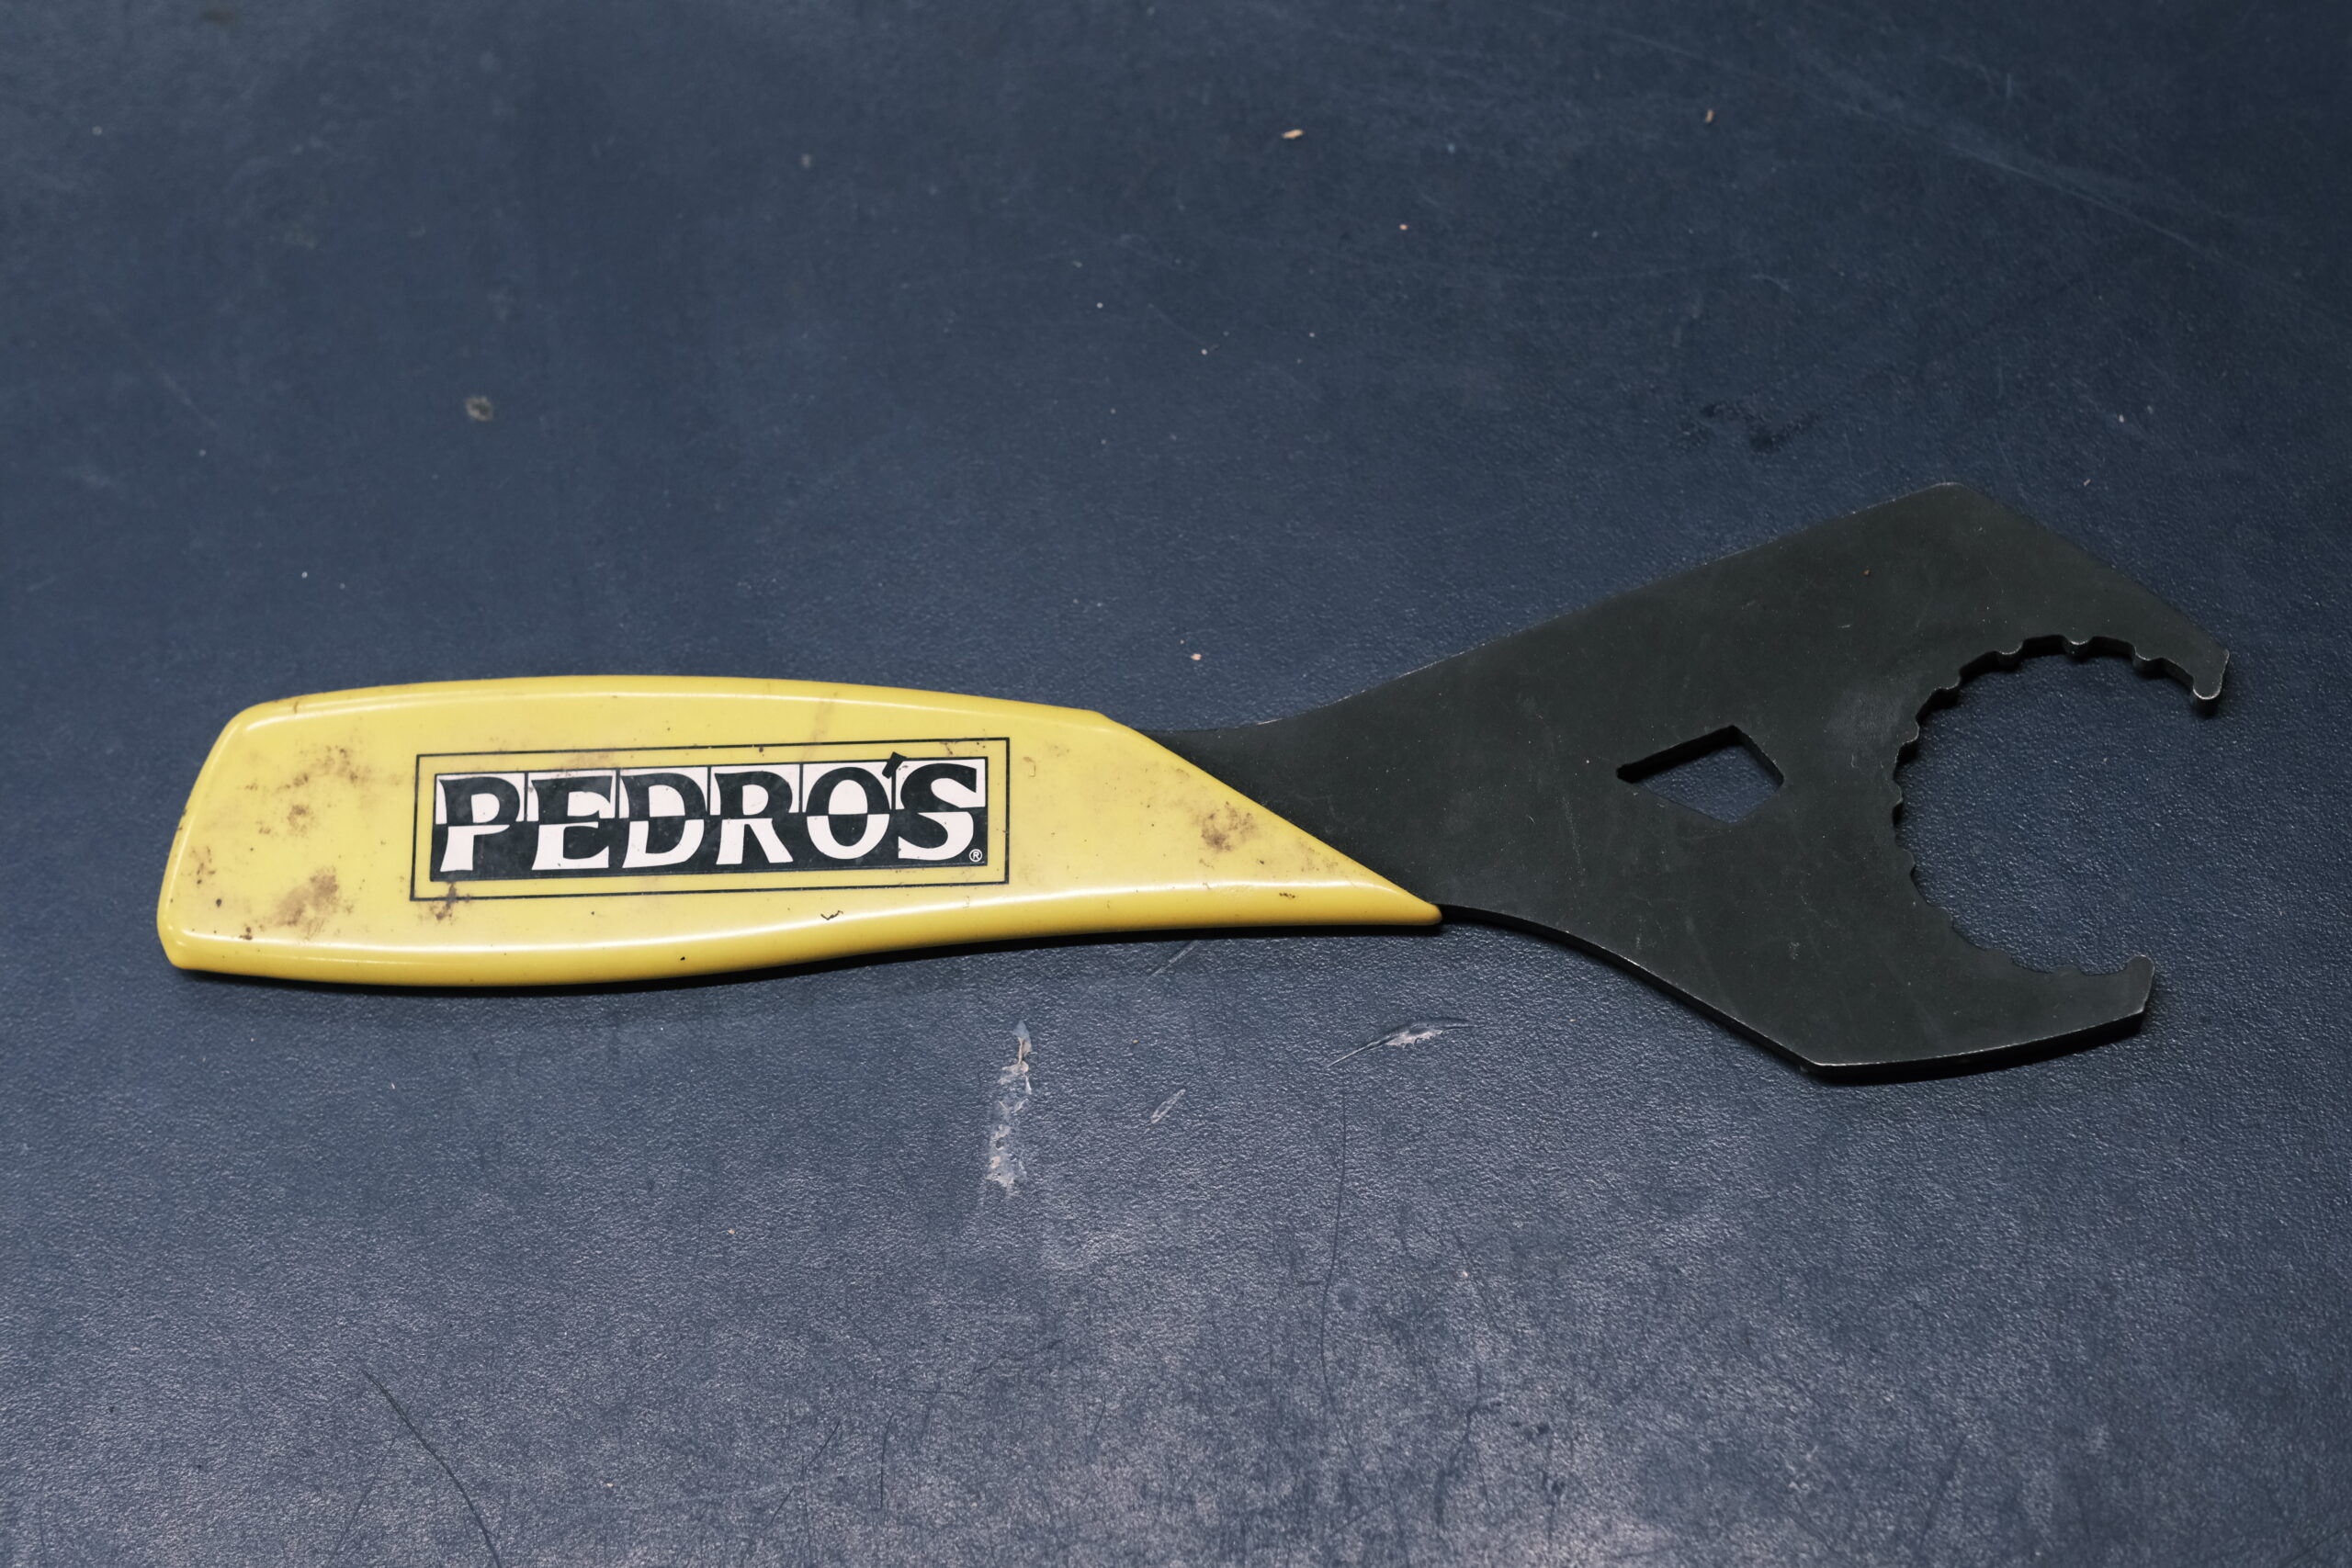 Pedros Shimano 16x44 Bottom Bracket/Centerlock lockring wrench